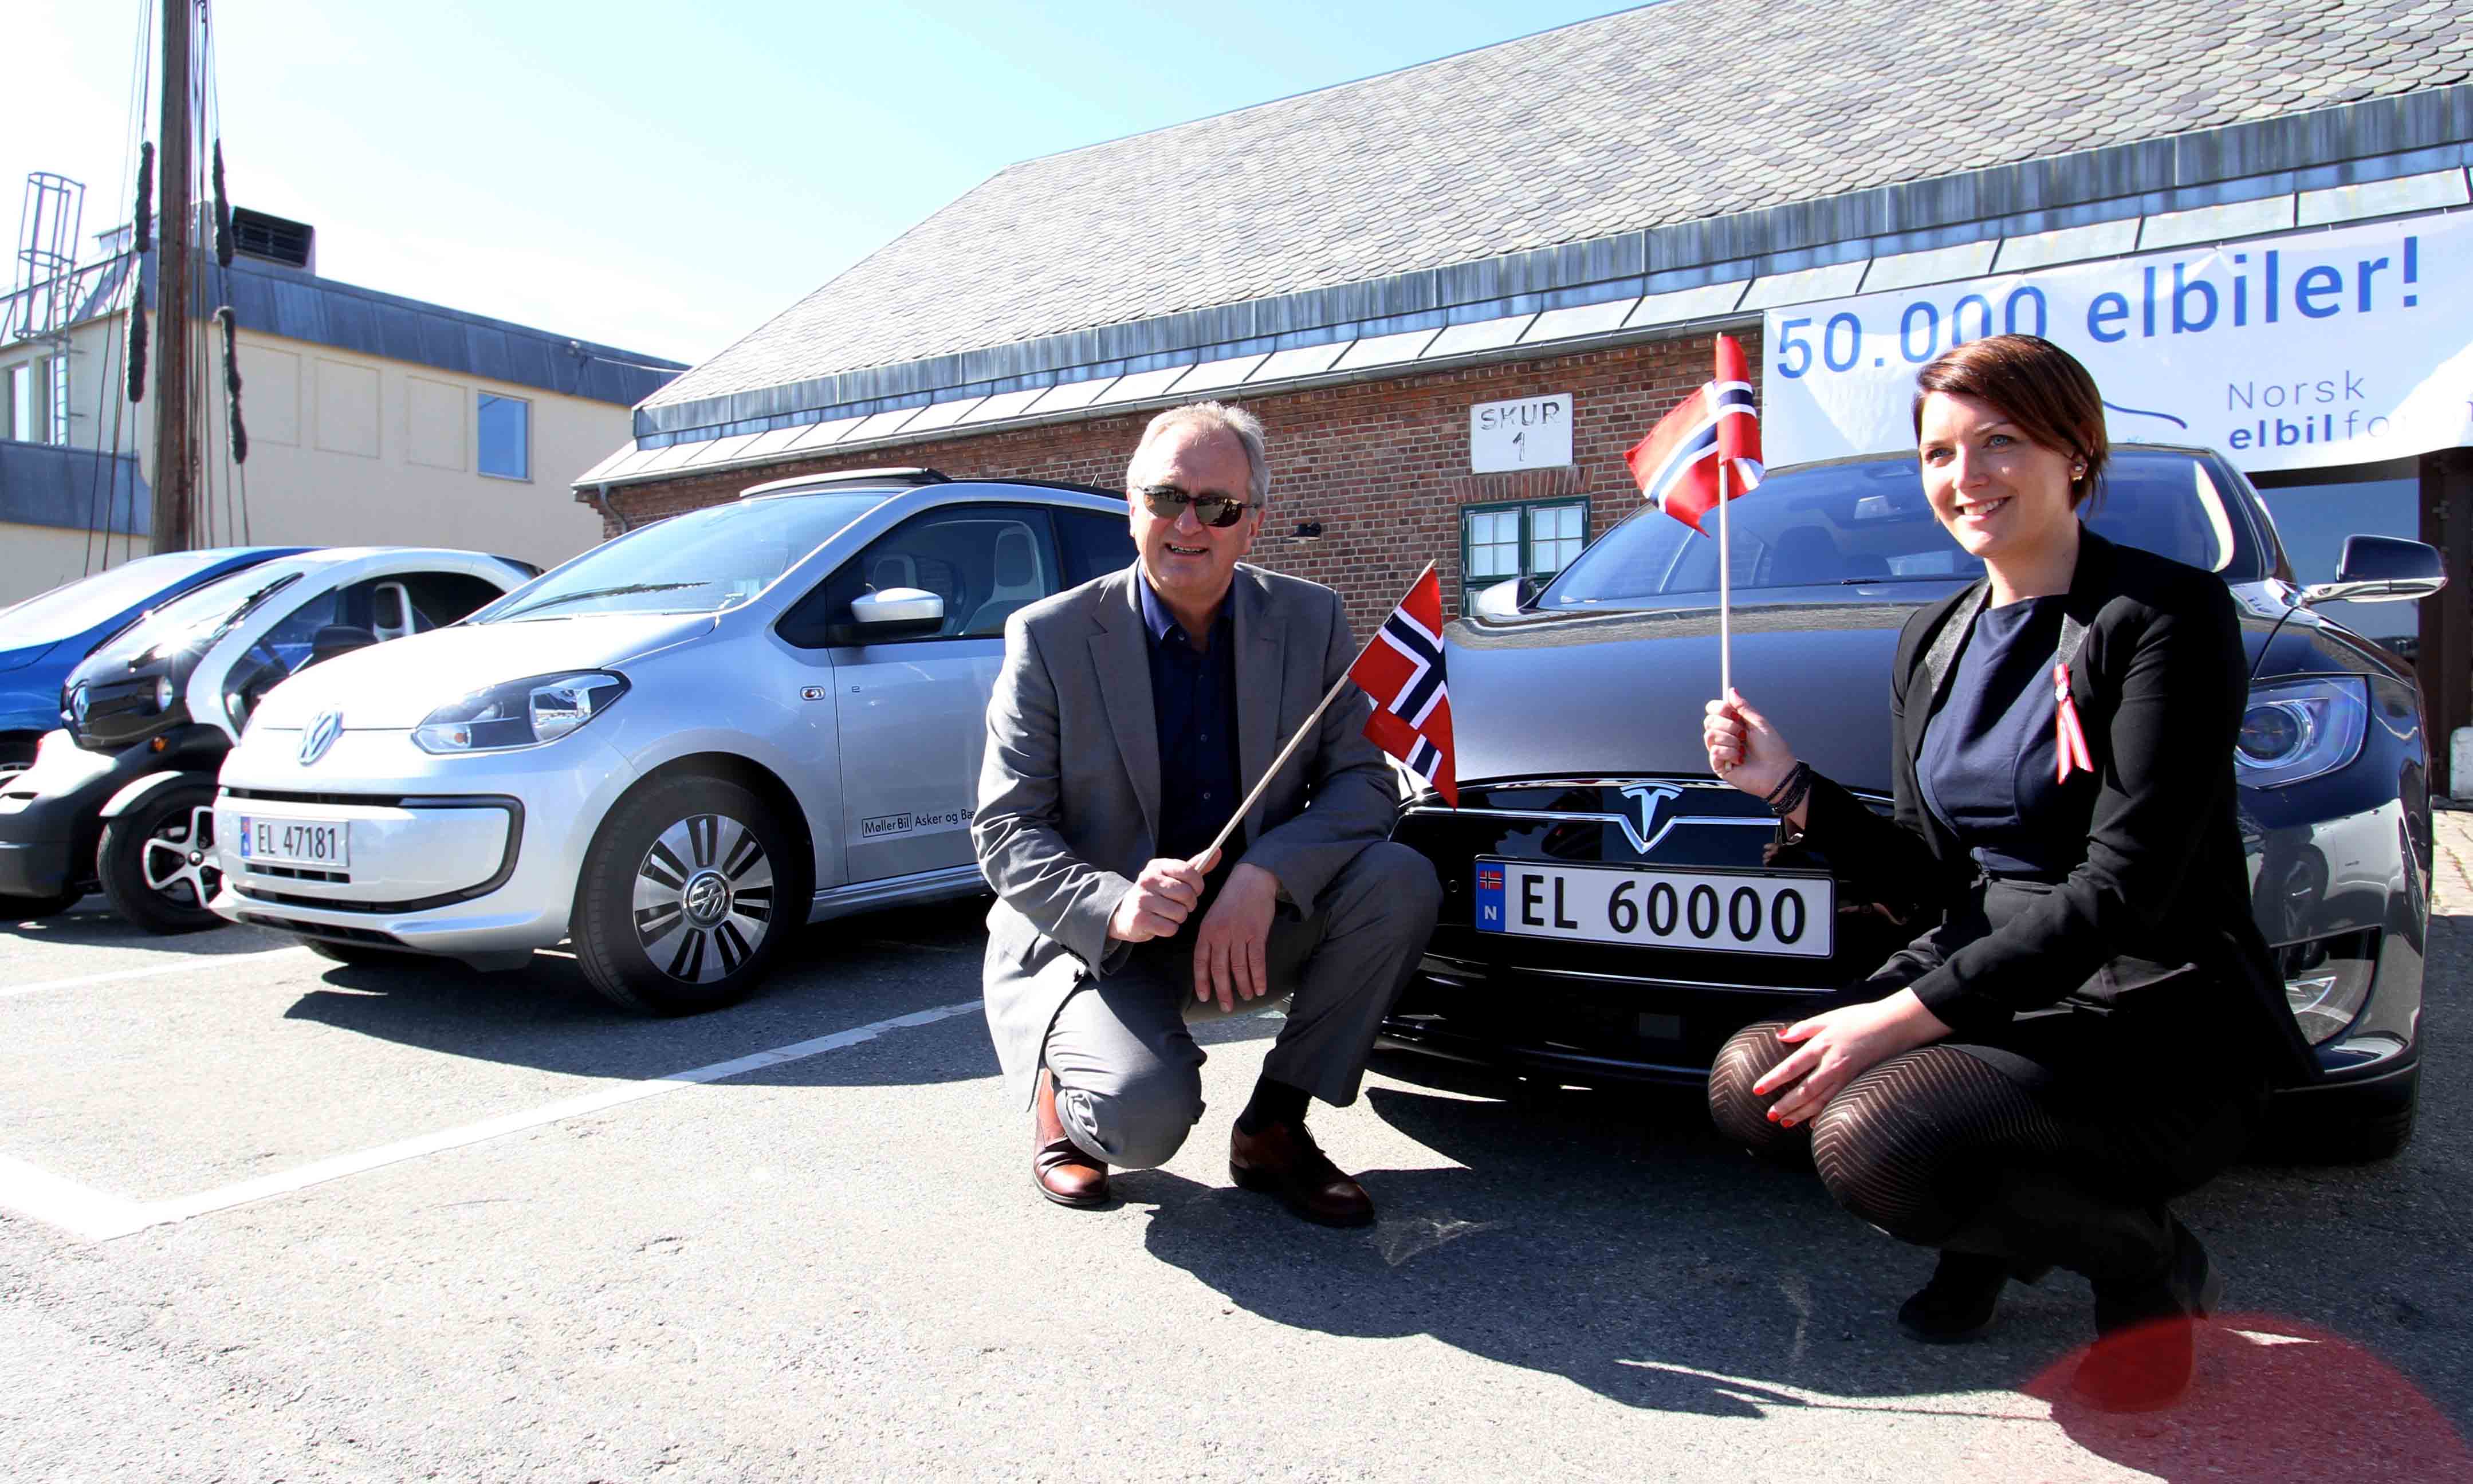 Das 50.000ste in Norwegen verkaufte Elektroauto war ein Tesla Model S. Bildquelle: Ståle Frydenlund: http://www.elbil.no/